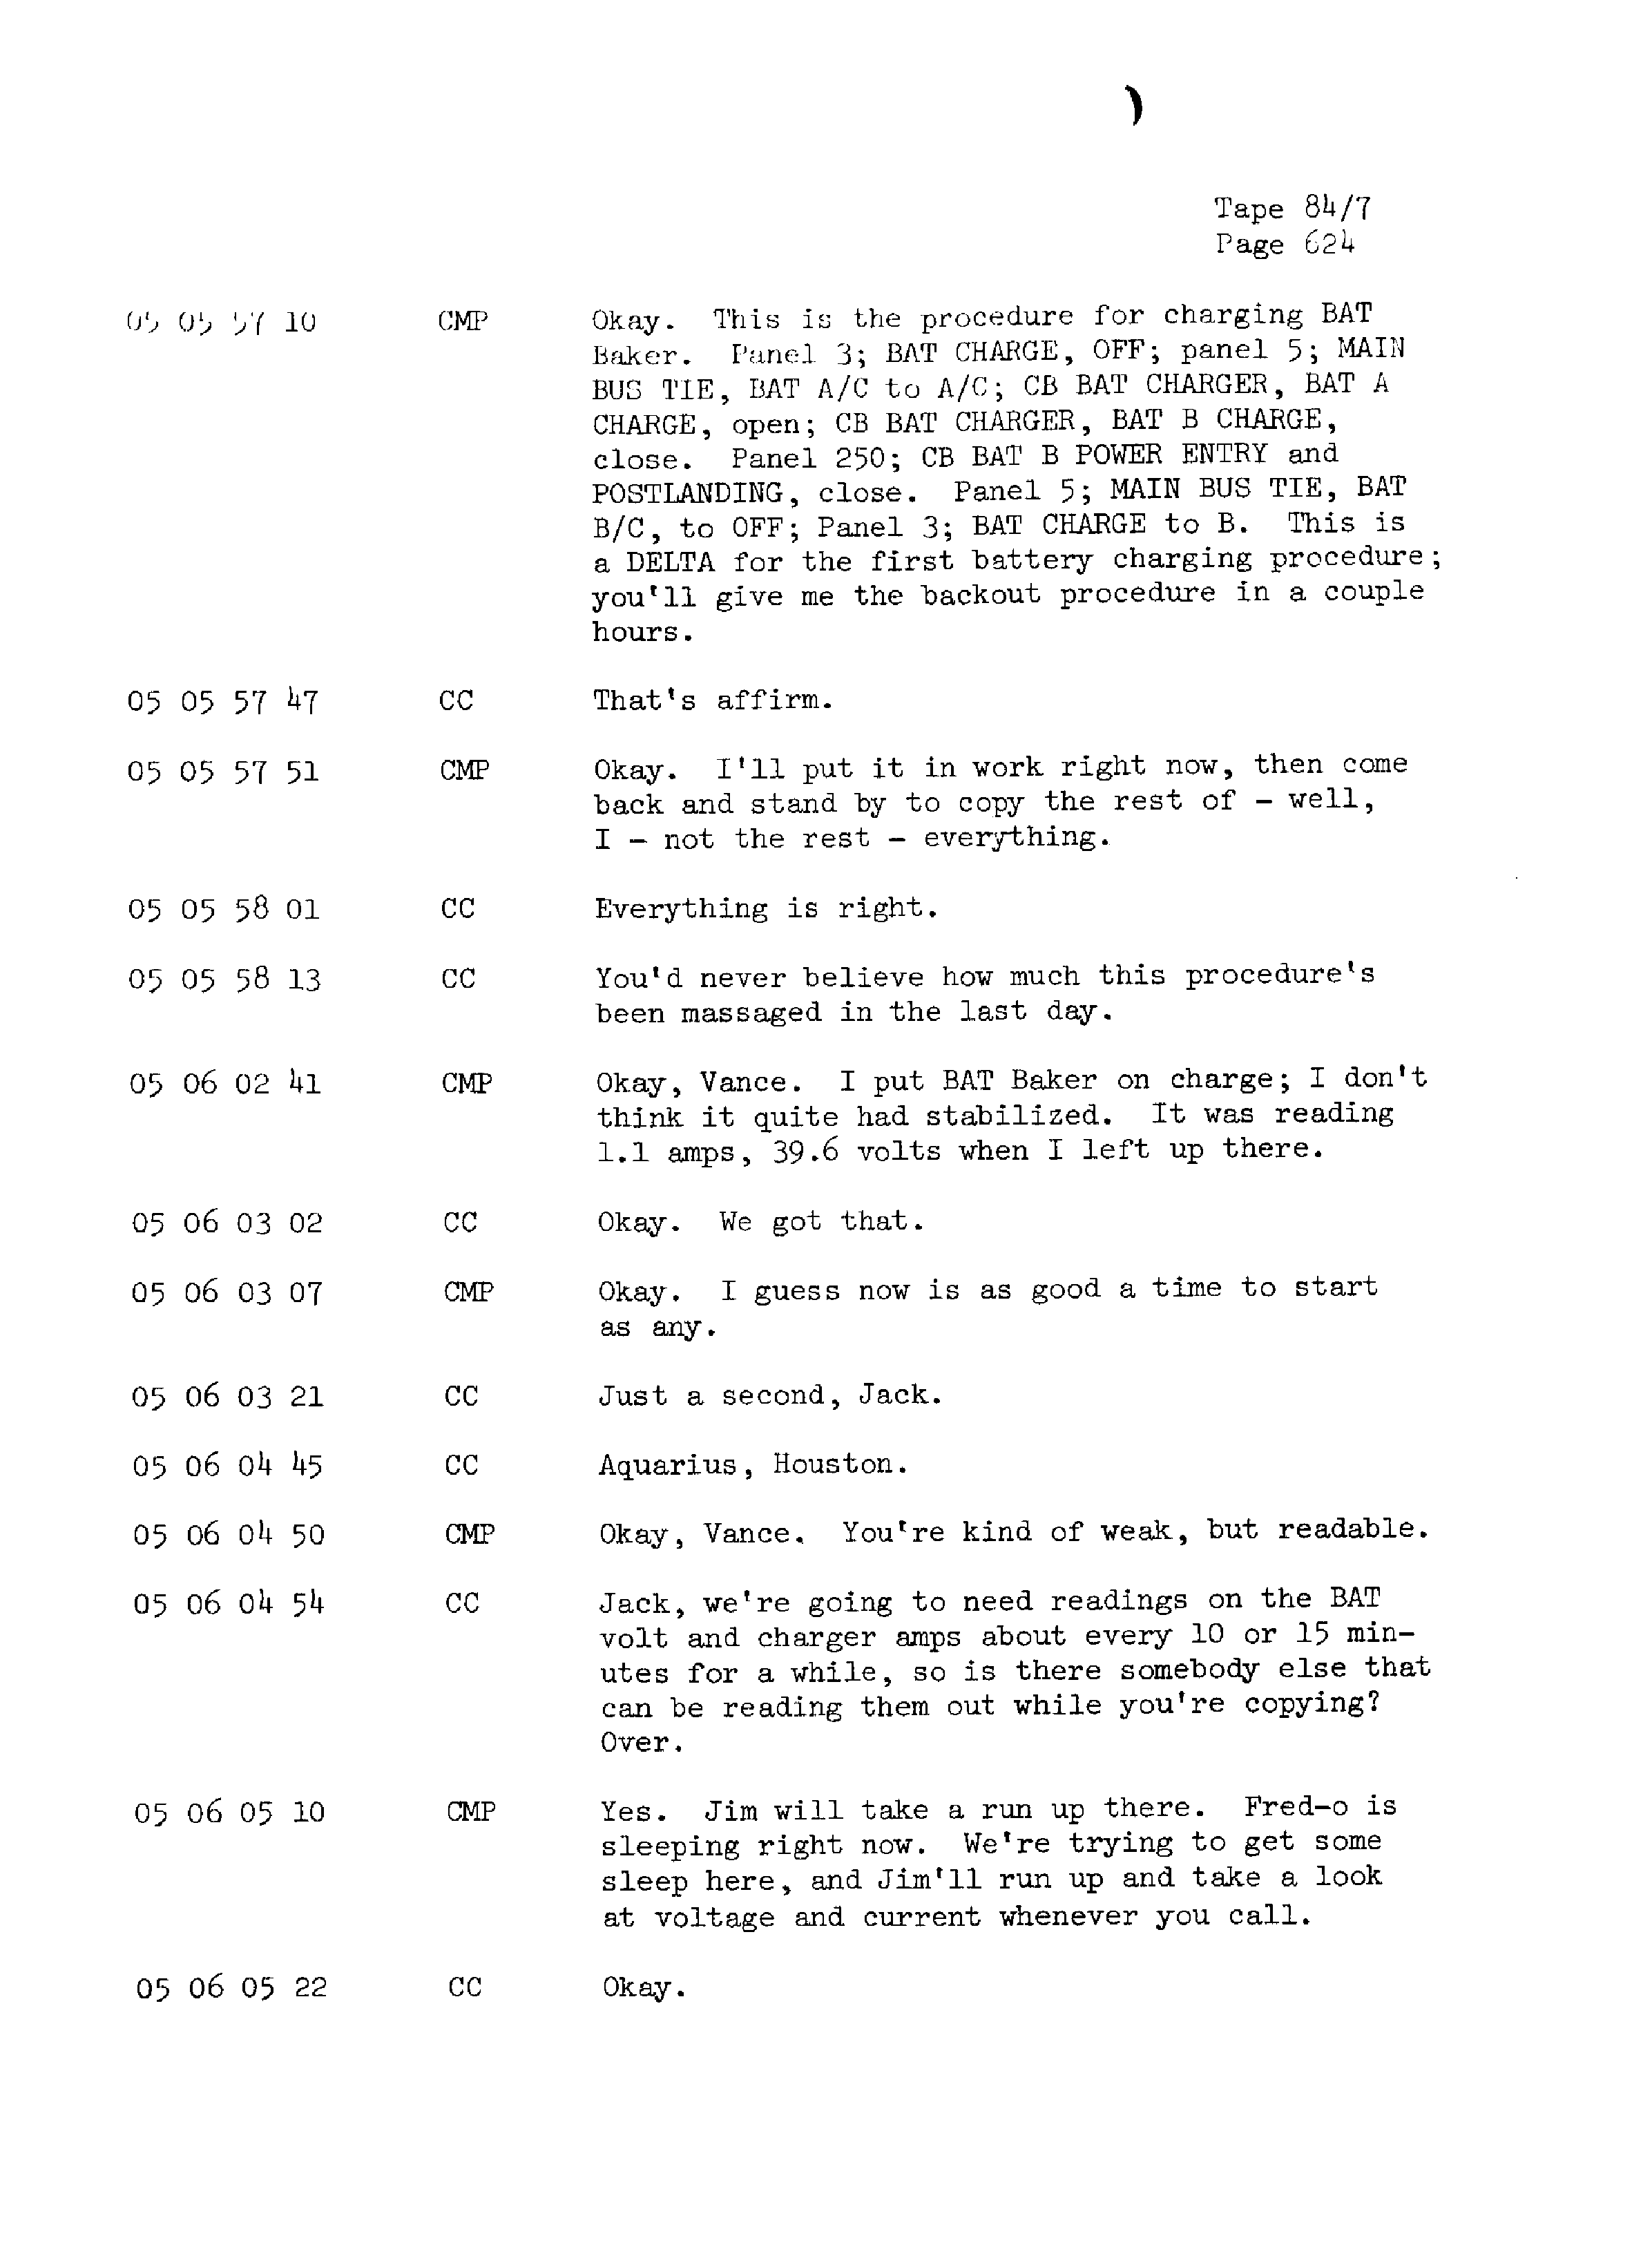 Page 631 of Apollo 13’s original transcript